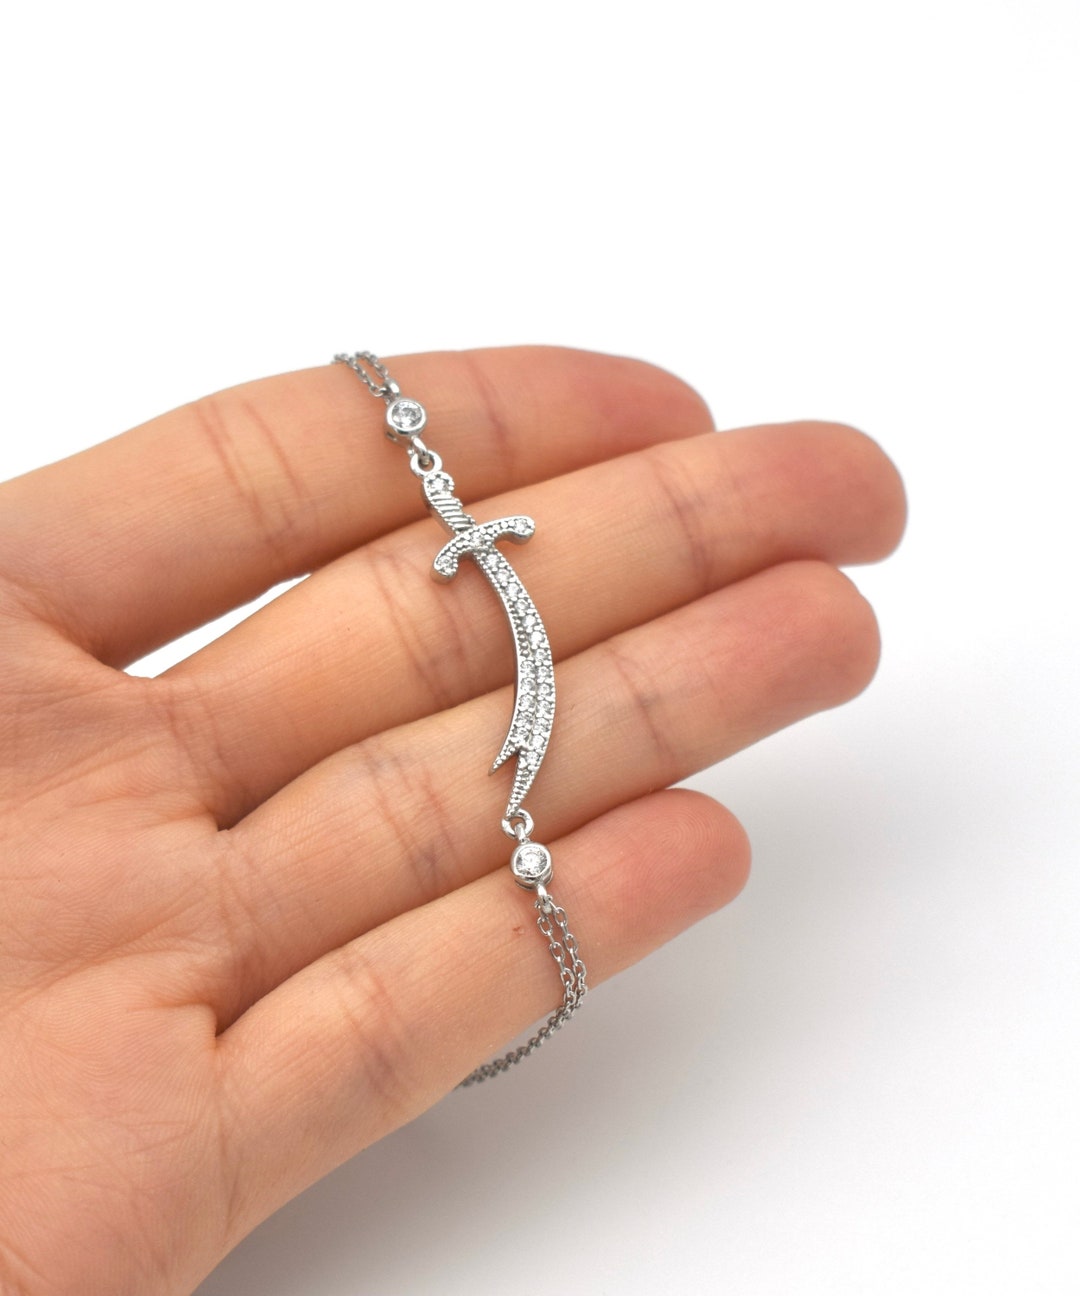 zulfiqar sword bracelet 3D model 3D printable | CGTrader